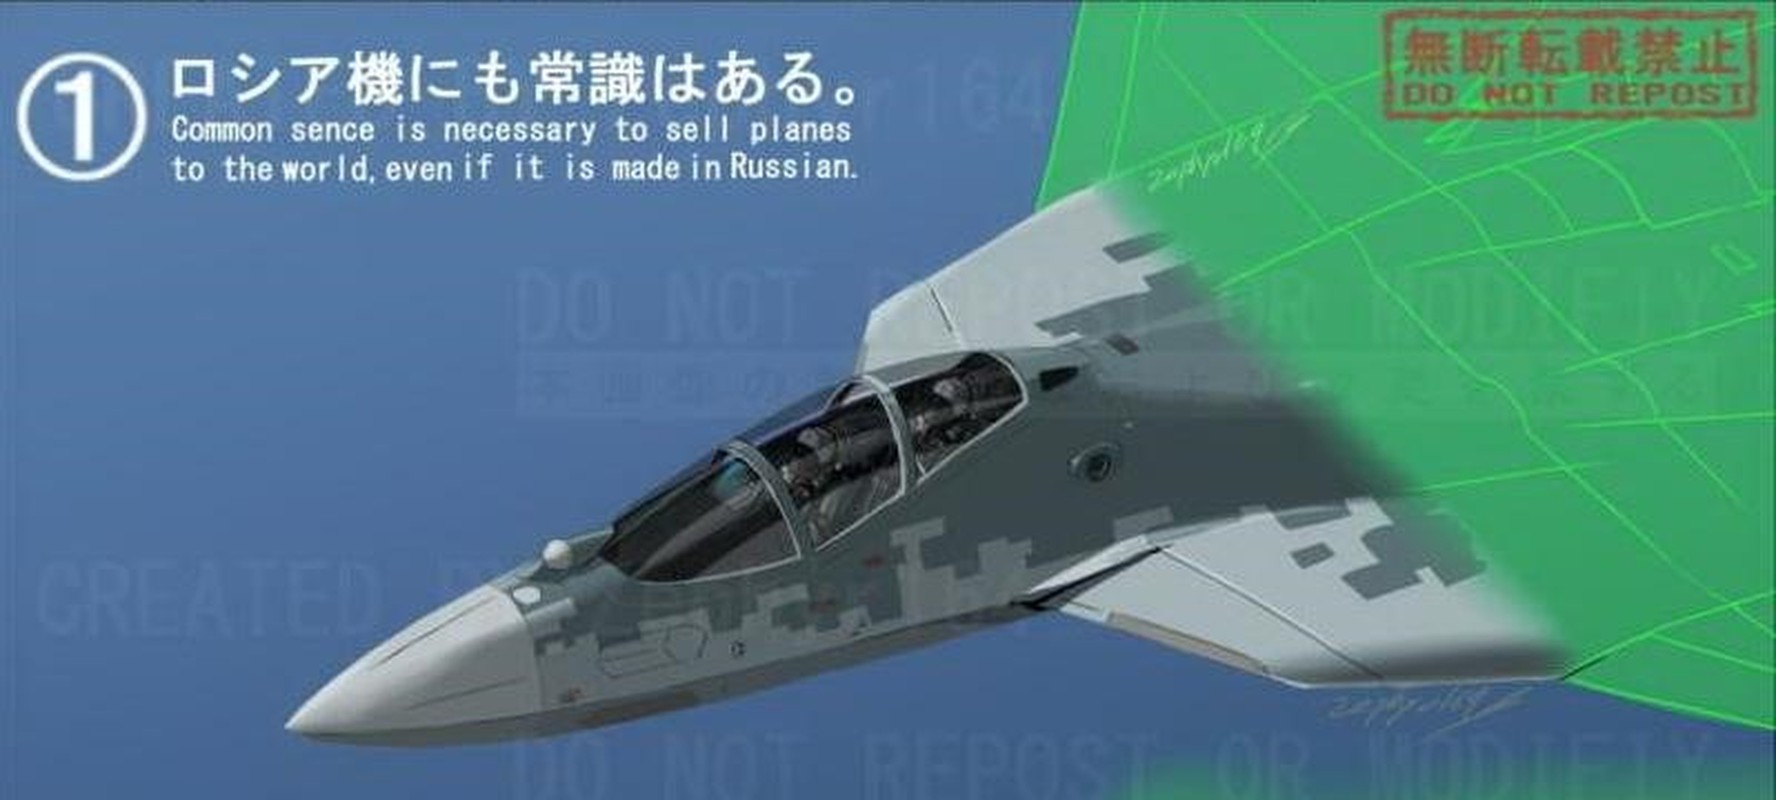 Lo dien cau hinh ky la cua Su-57 phien ban hai phi cong?-Hinh-5